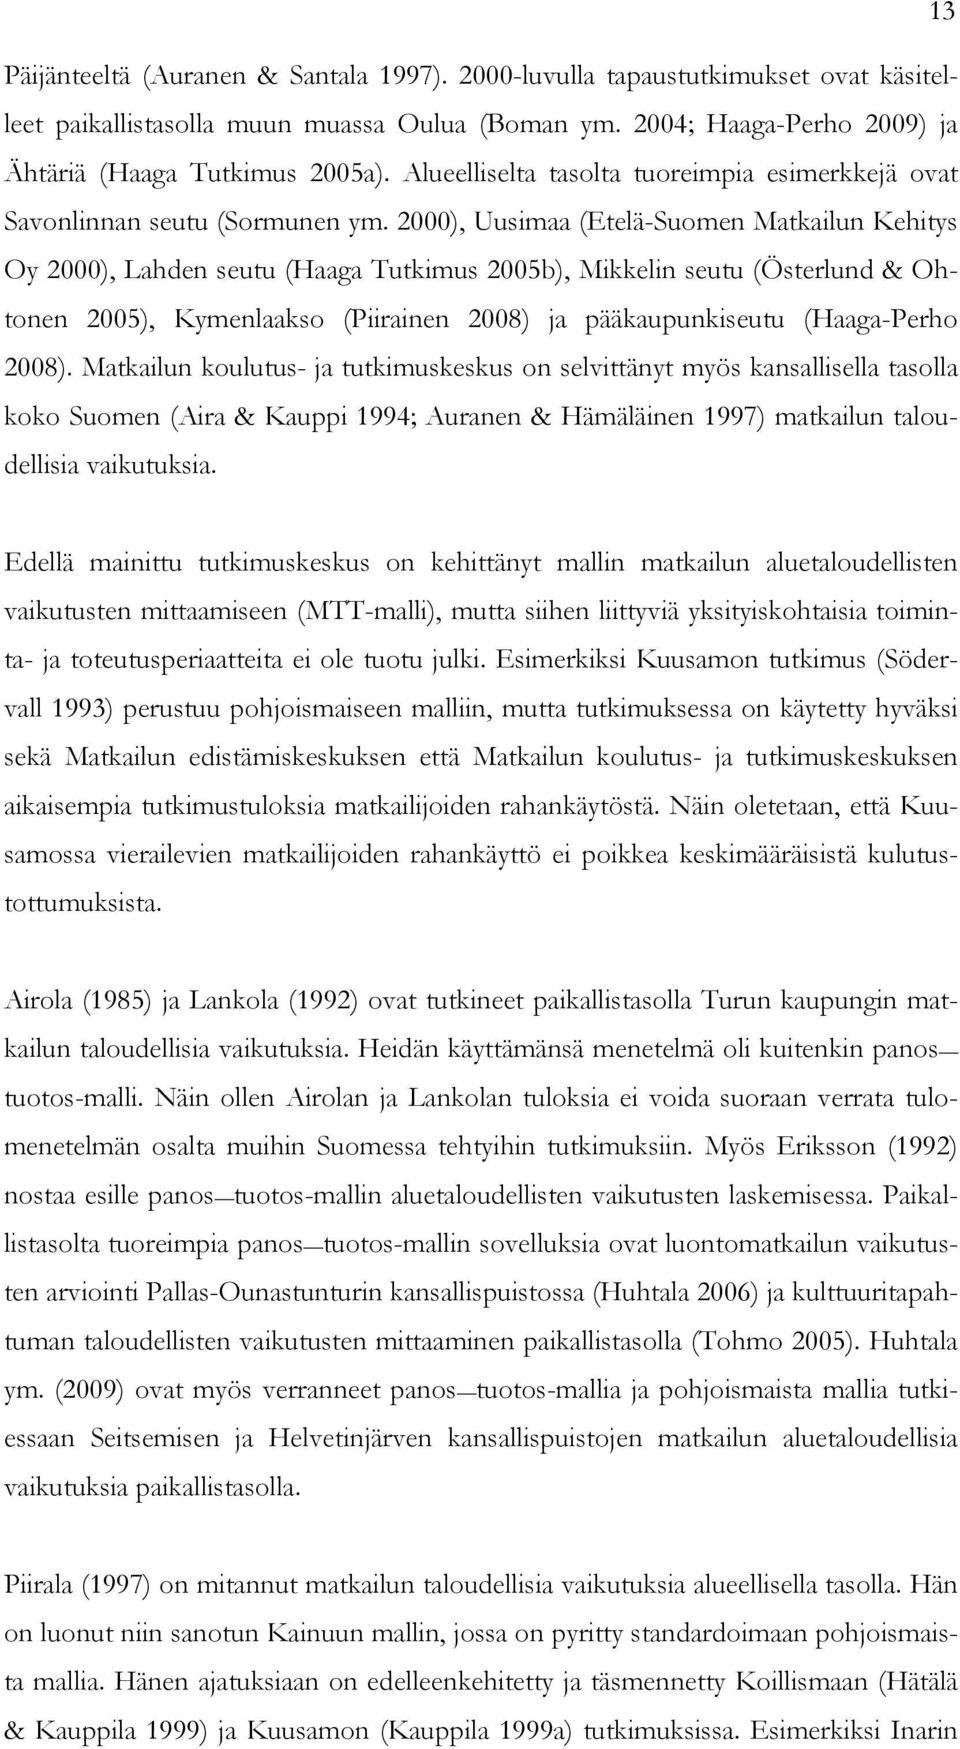 2000), Uusimaa (Etelä-Suomen Matkailun Kehitys Oy 2000), Lahden seutu (Haaga Tutkimus 2005b), Mikkelin seutu (Österlund & Ohtonen 2005), Kymenlaakso (Piirainen 2008) ja pääkaupunkiseutu (Haaga-Perho